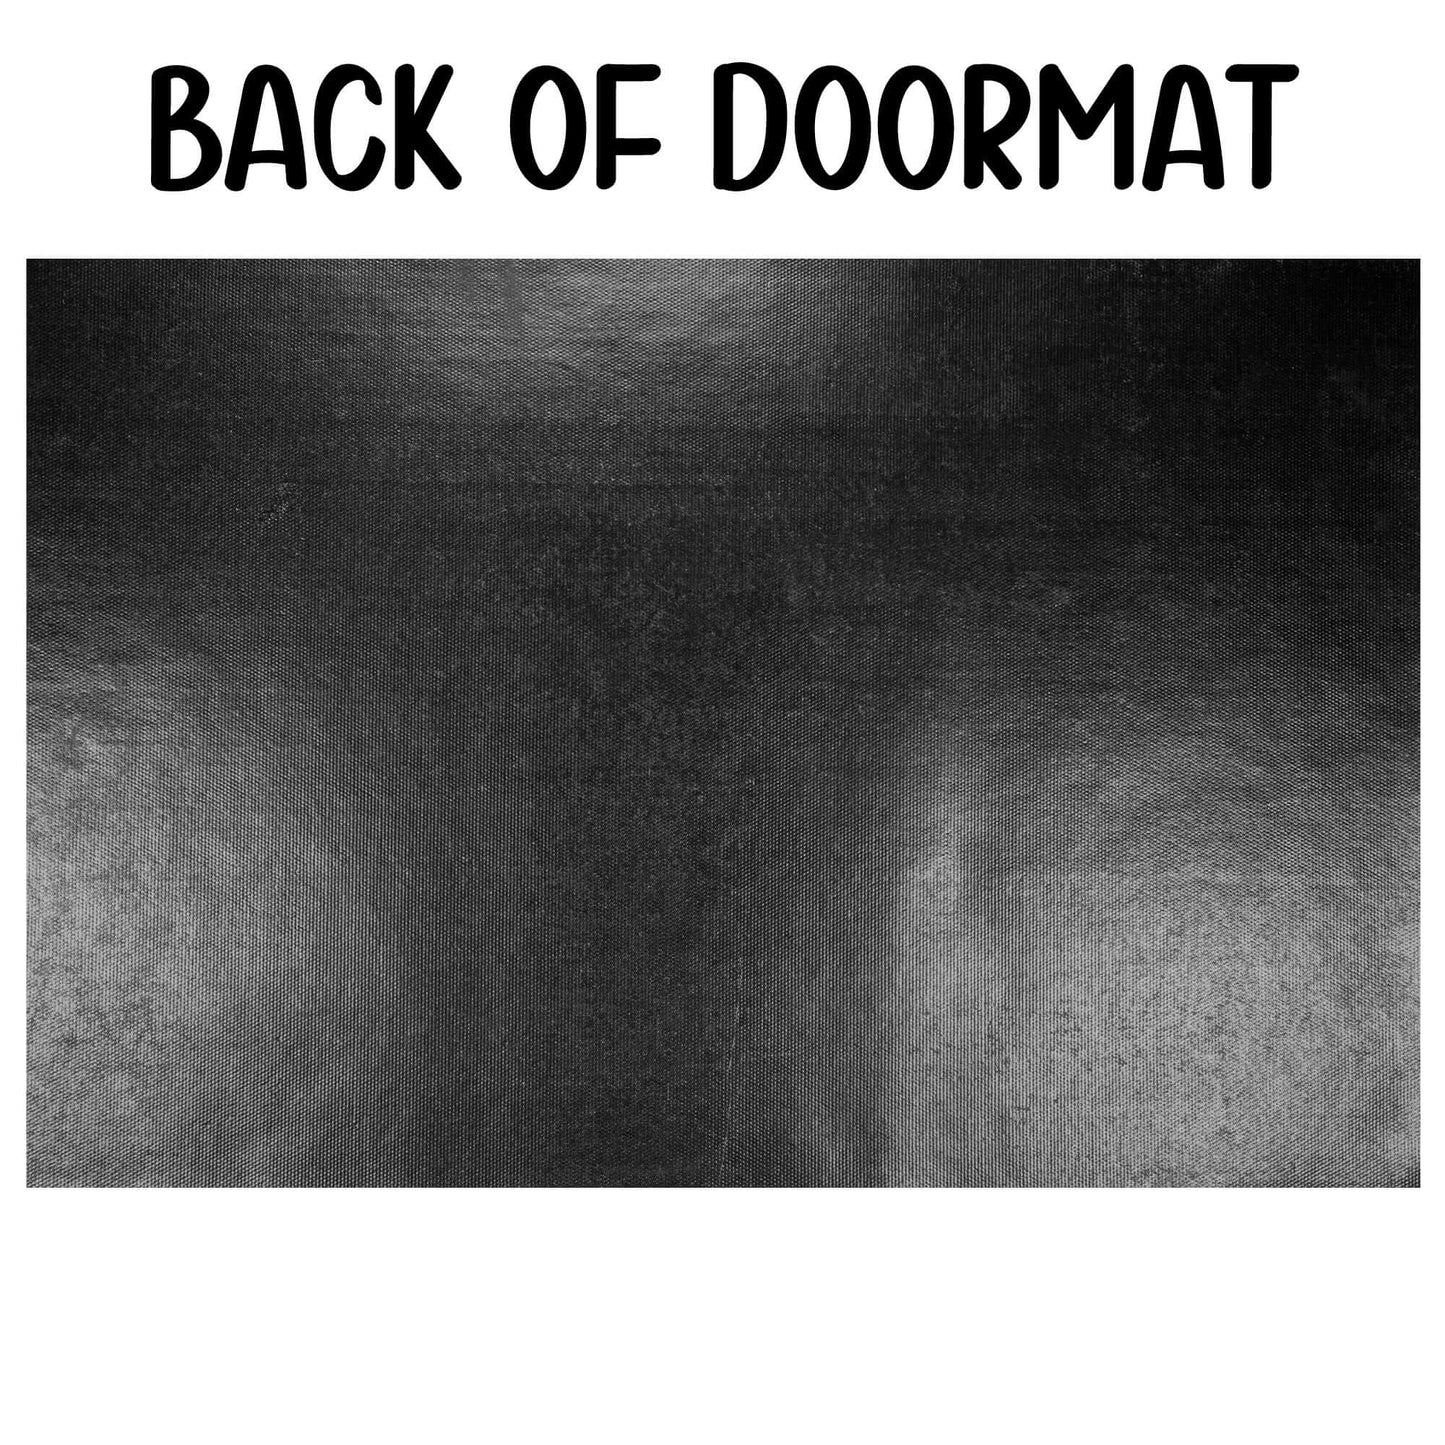 Go away doormat. Funny door mat.